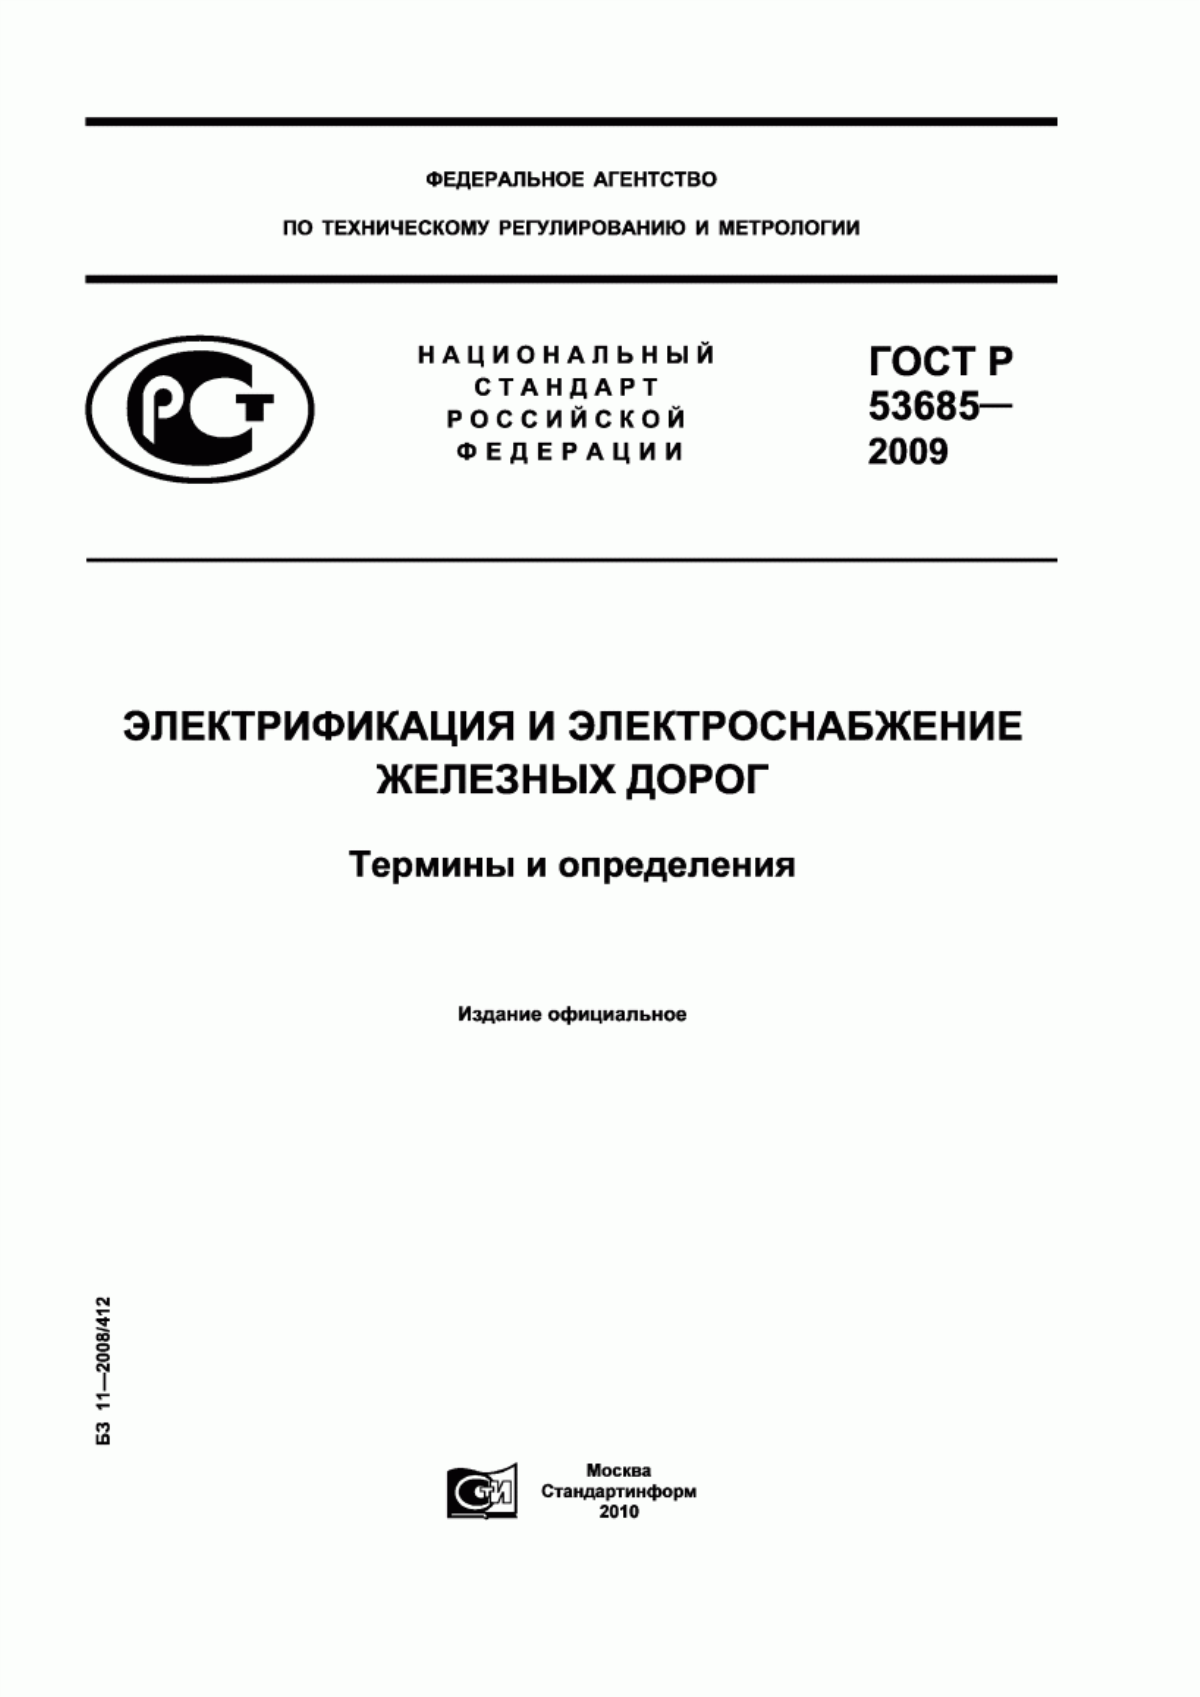 ГОСТ Р 53685-2009 Электрификация и электроснабжение железных дорог. Термины и определения